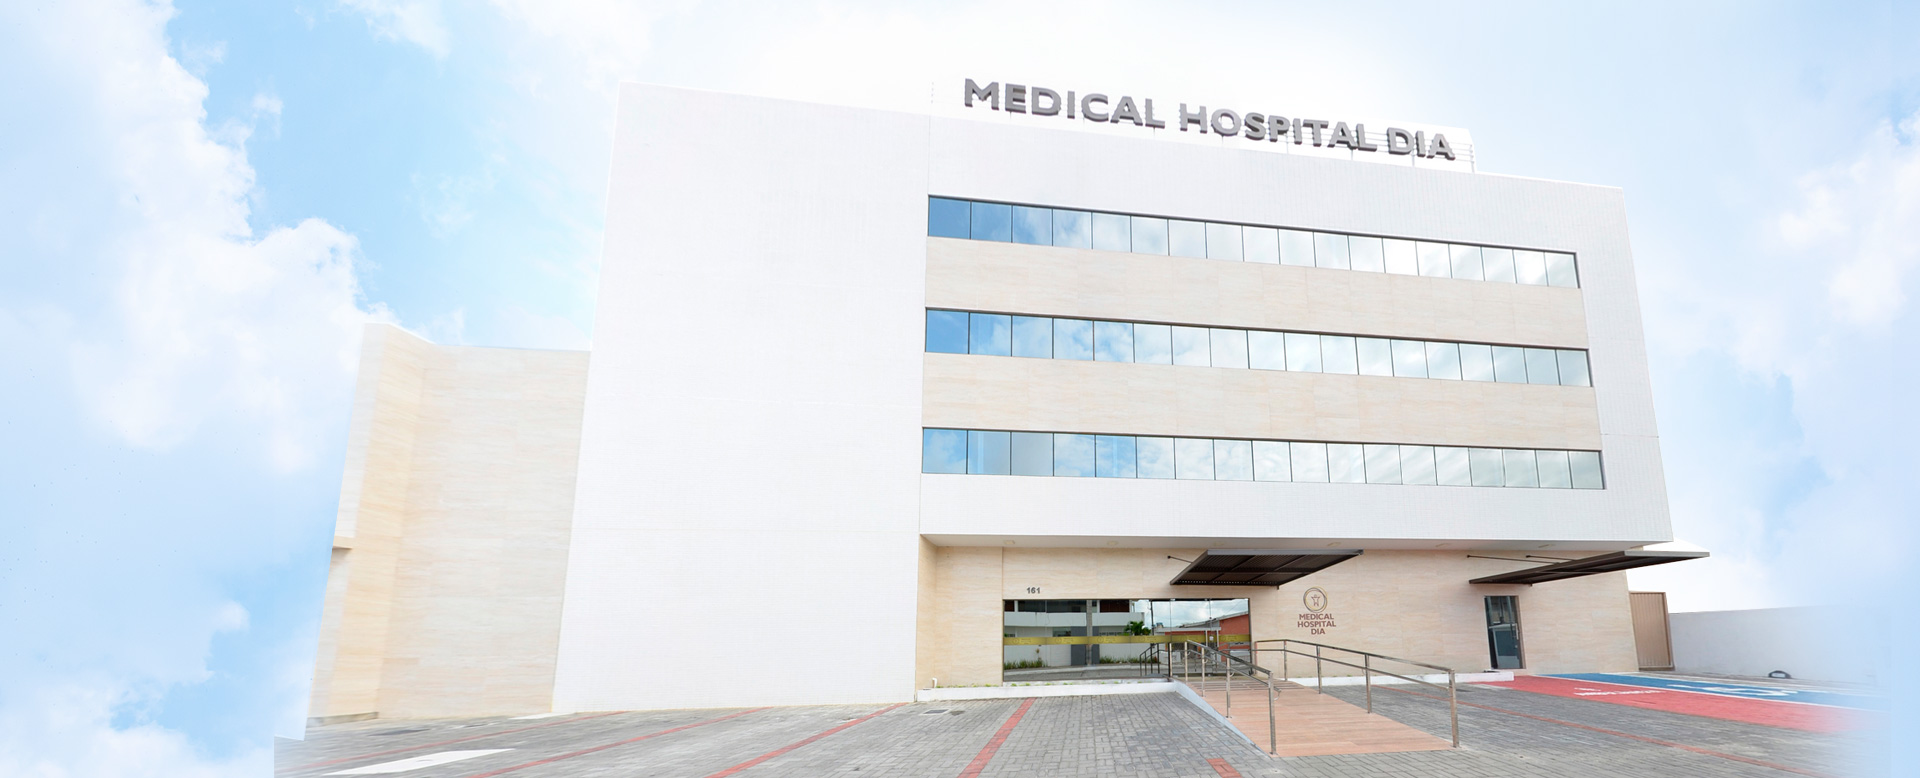 MUDANÇA DE LOCAL: Pacientes da Unidade de Oncologia da Unimed JP serão atendidos no Hospital Medical Dia a partir desta quarta-feira